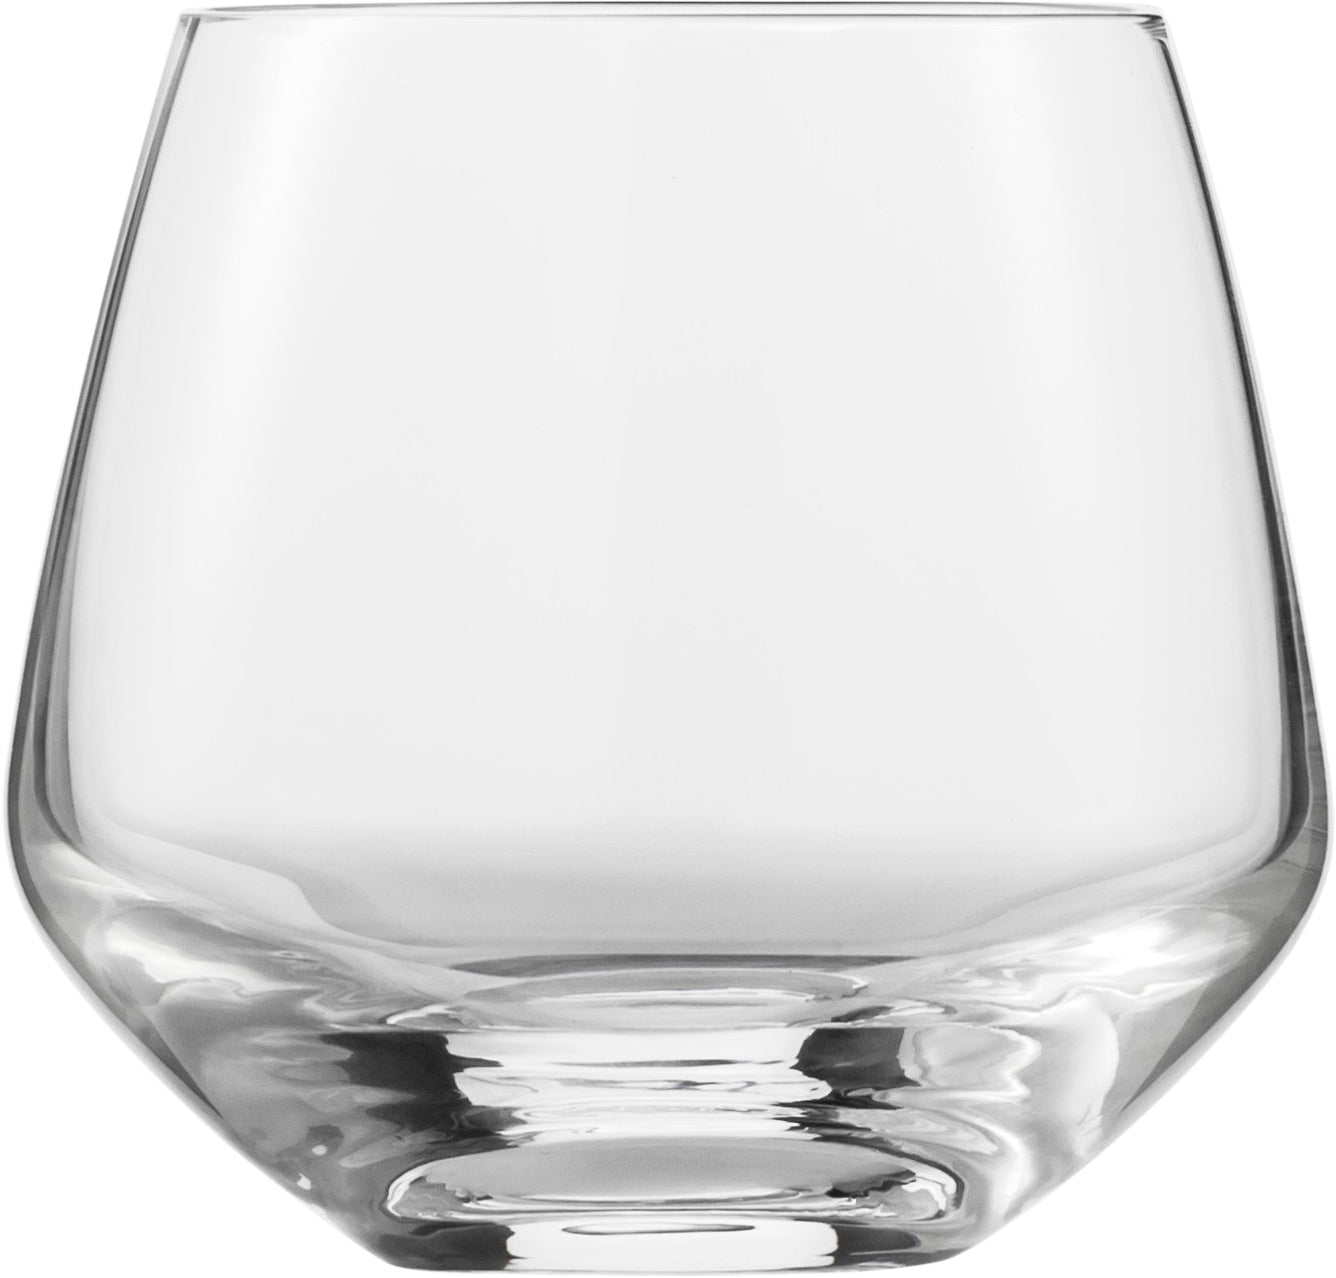 Eisch Whiskyglas Sky SENSISPLUS - 2 Stück im Geschenkkarton 518/14